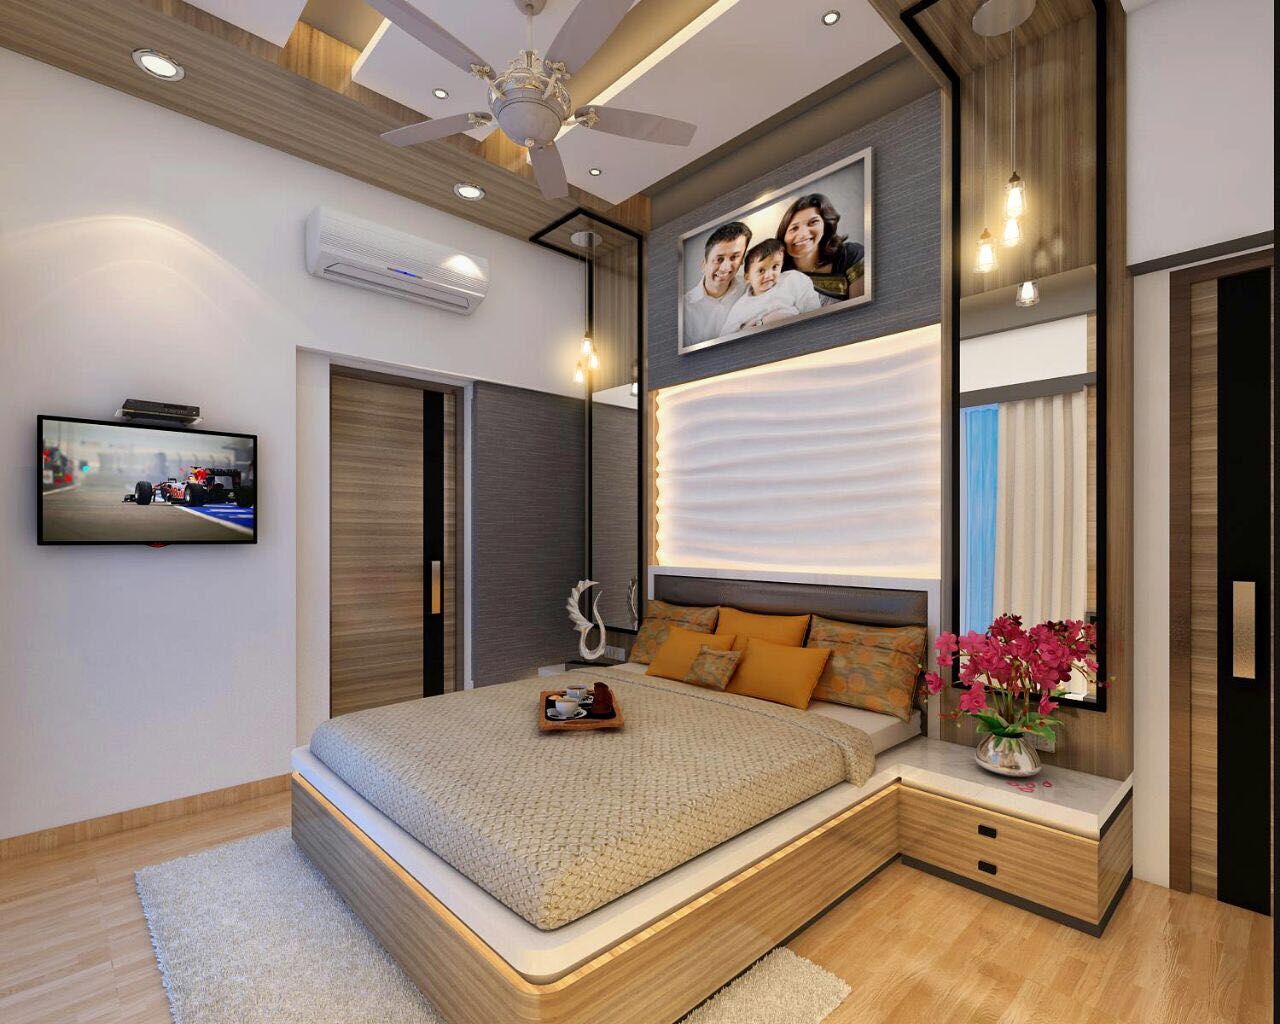 Bedroom Design Ideas Square 4 Design & Build Modern Bedroom